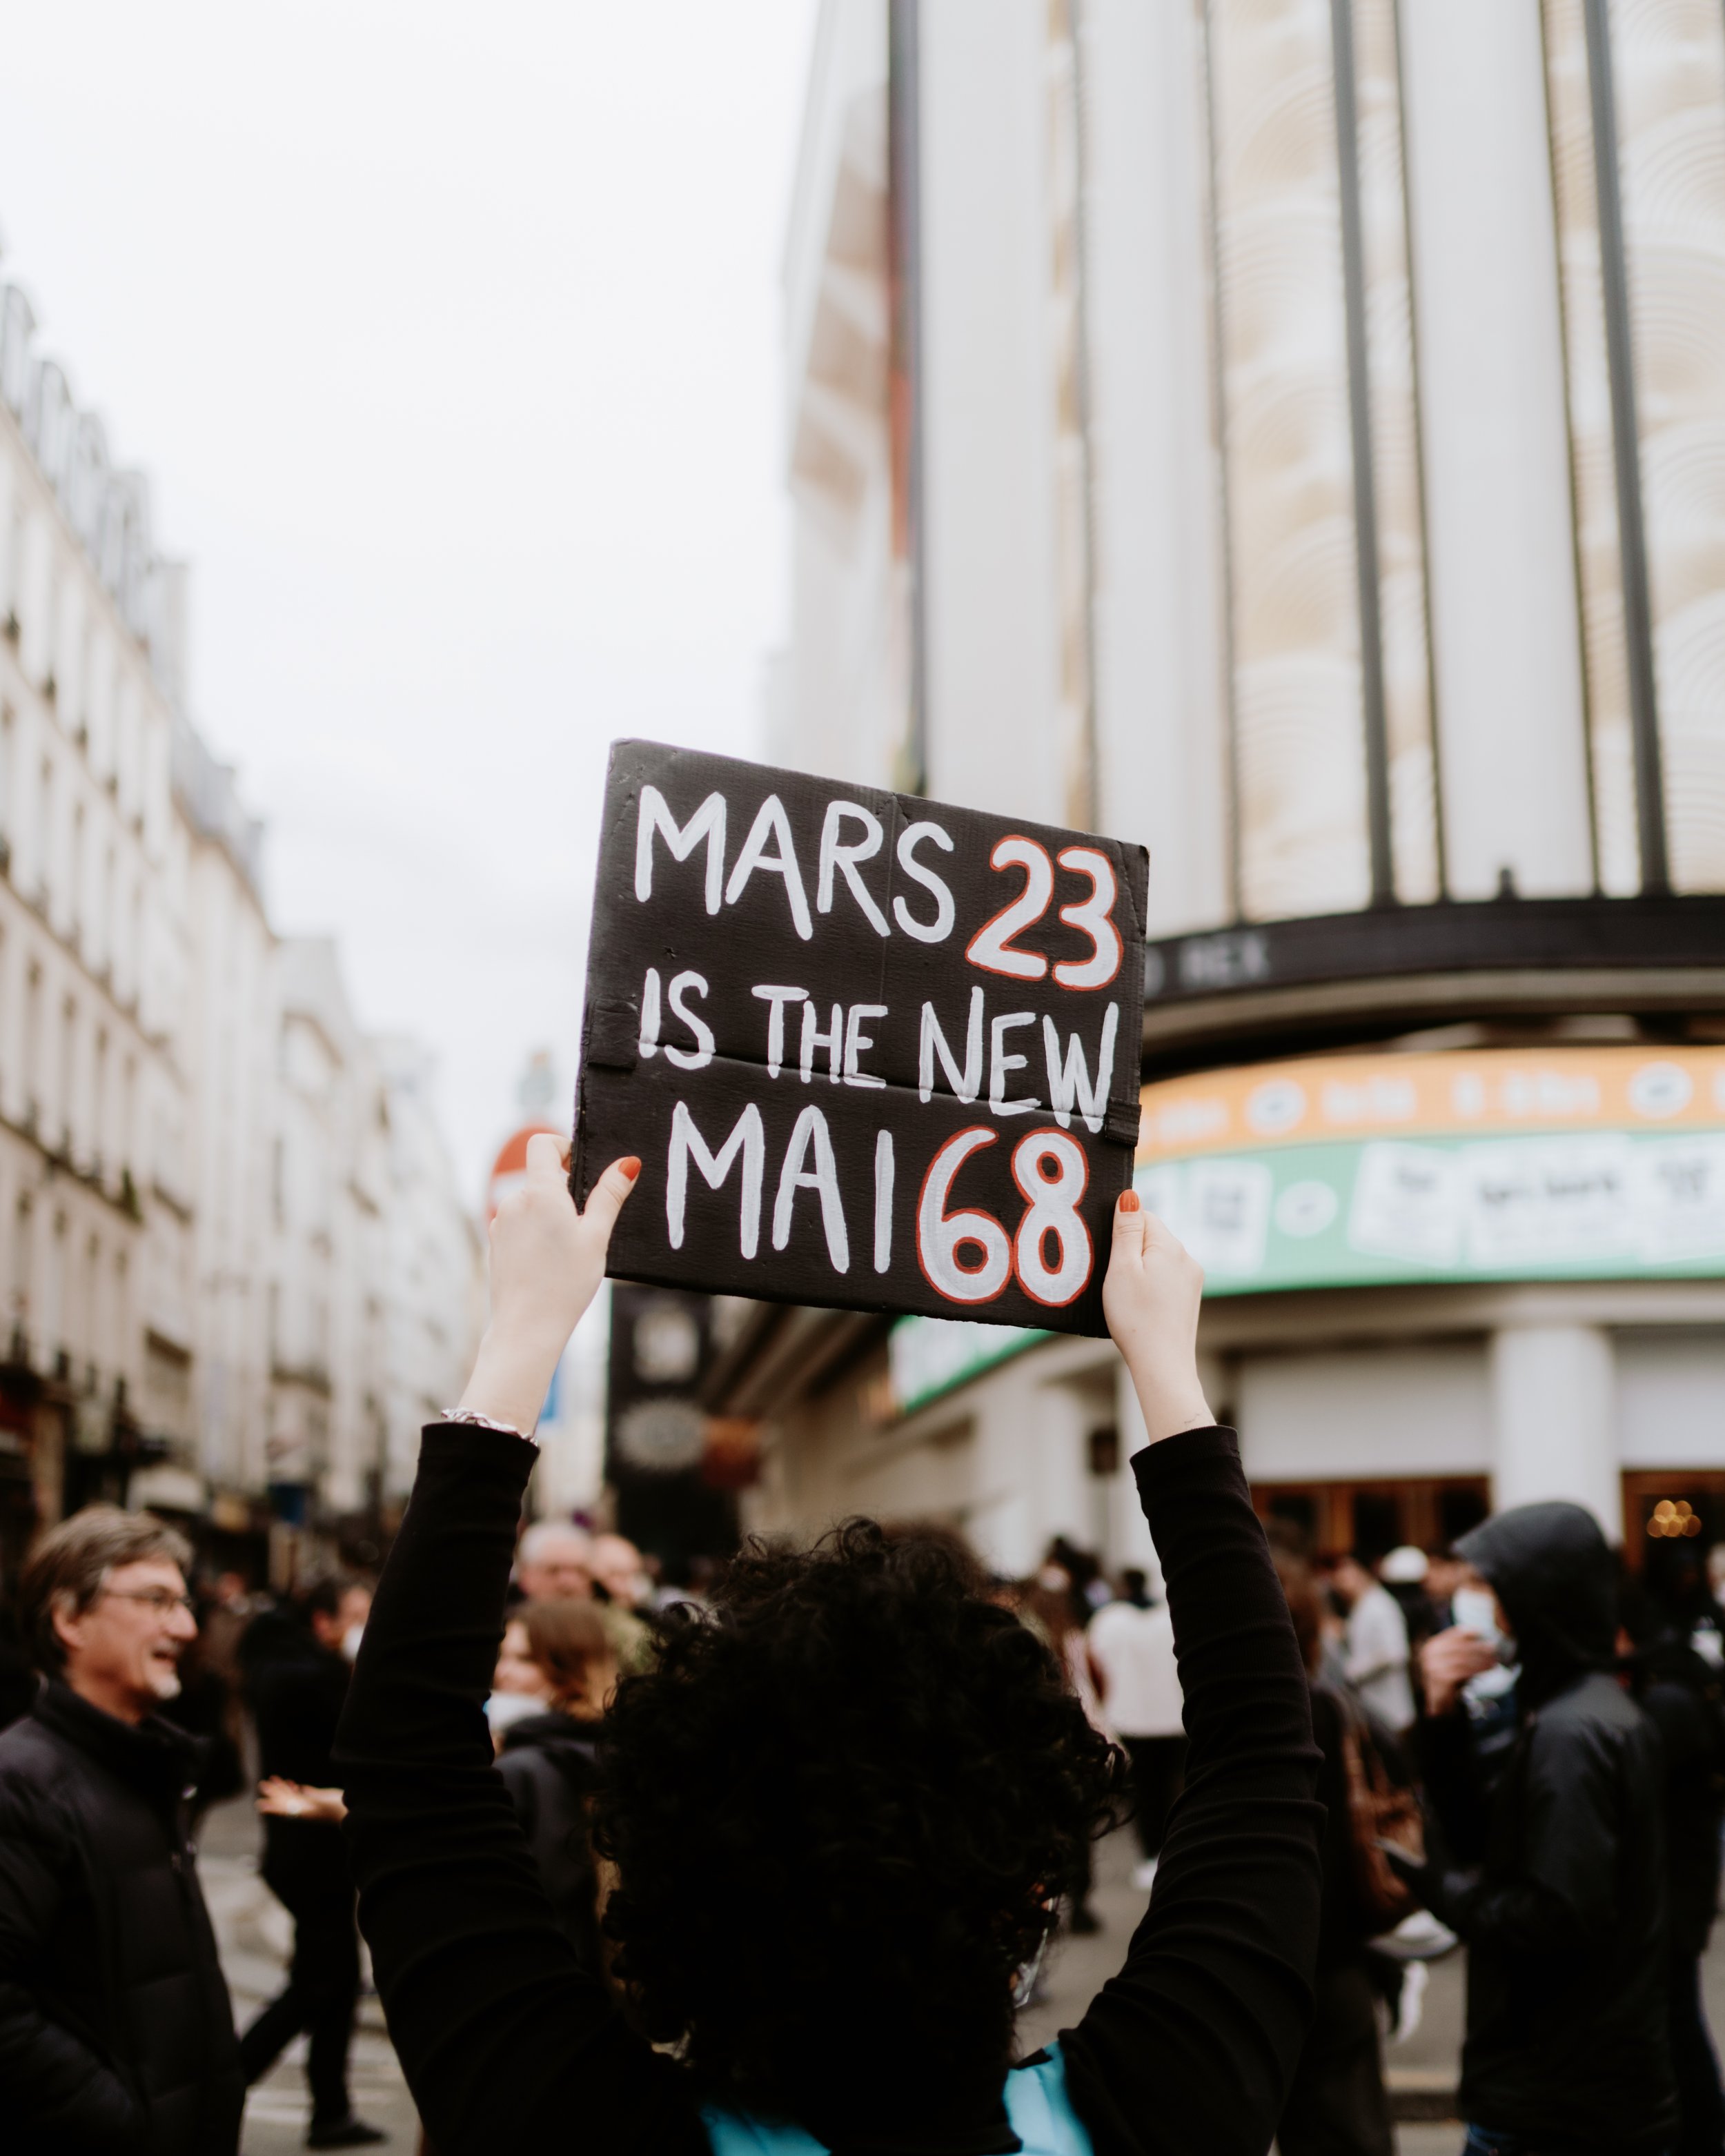  Manifestation contre la réforme des retraites - Paris - 24 mars 2023 